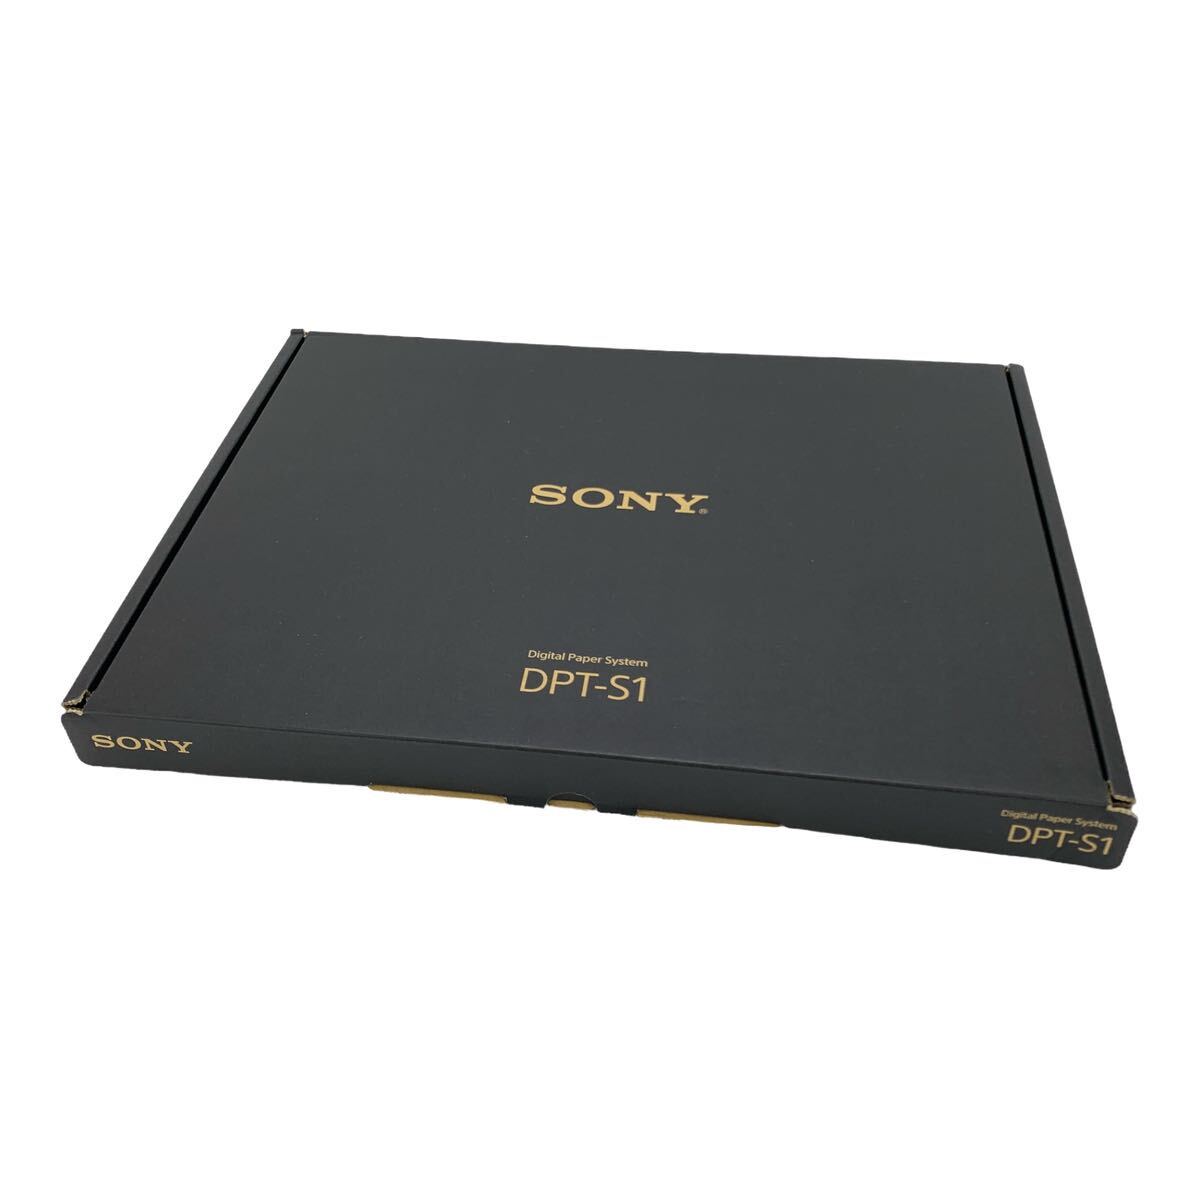 [ нераспечатанный ]SONY Sony DPT-S1 цифровой бумага система 